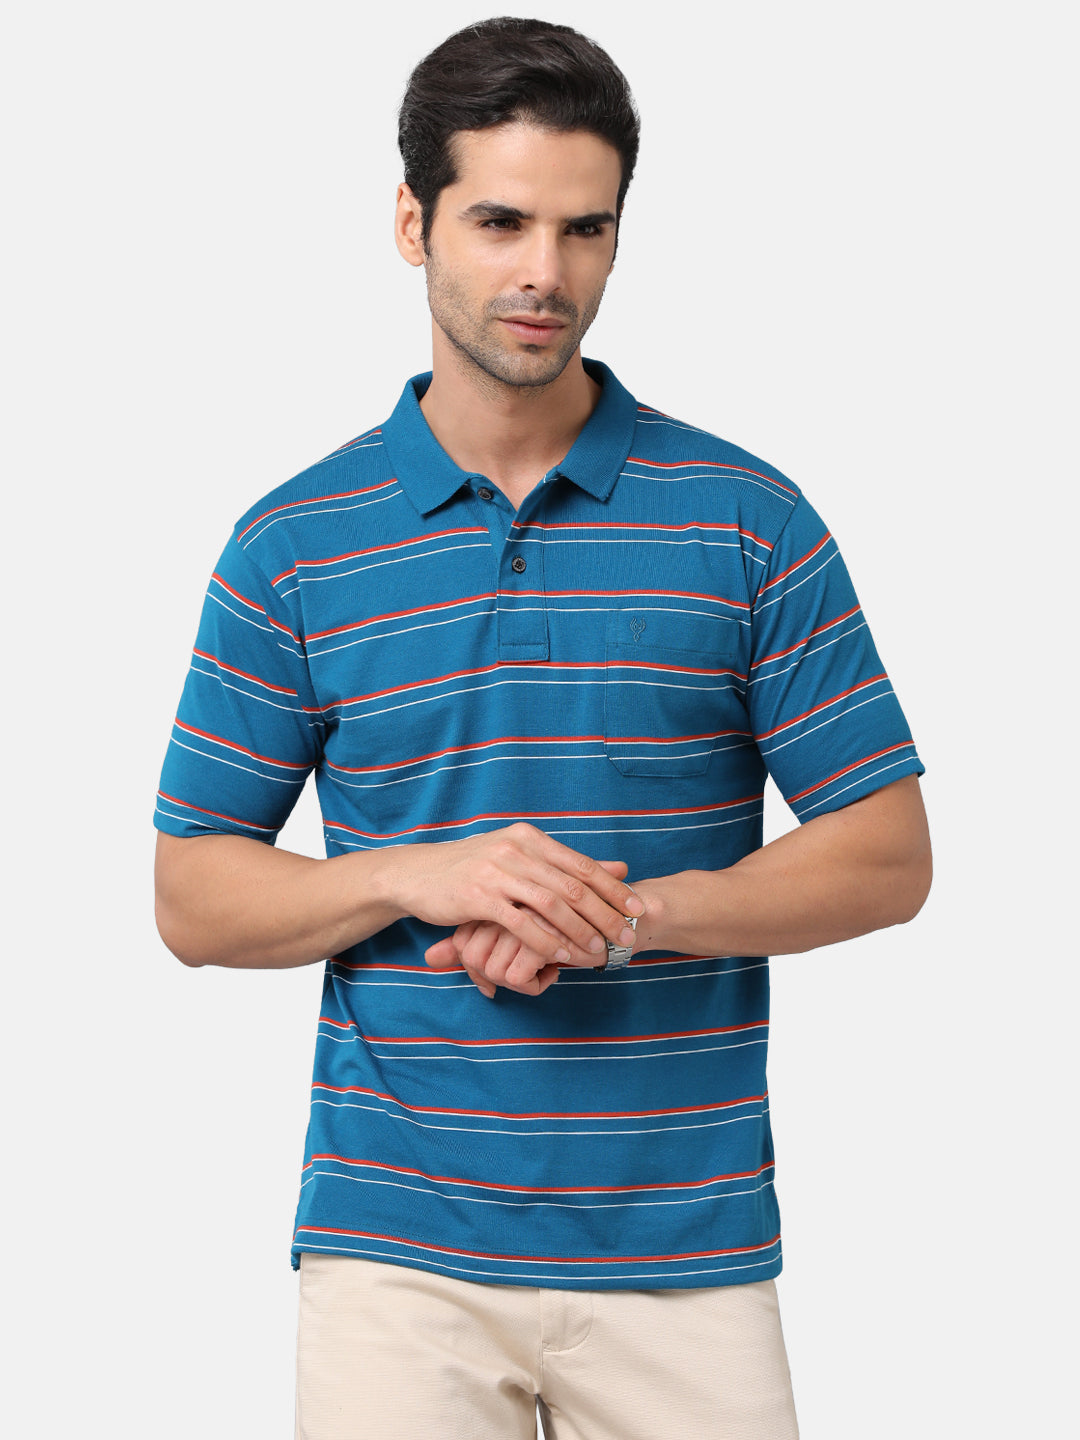 Classic Polo Mens Cotton Blend Striped Authentic Fit Polo Neck Blue Color T-Shirt | Avon 484b